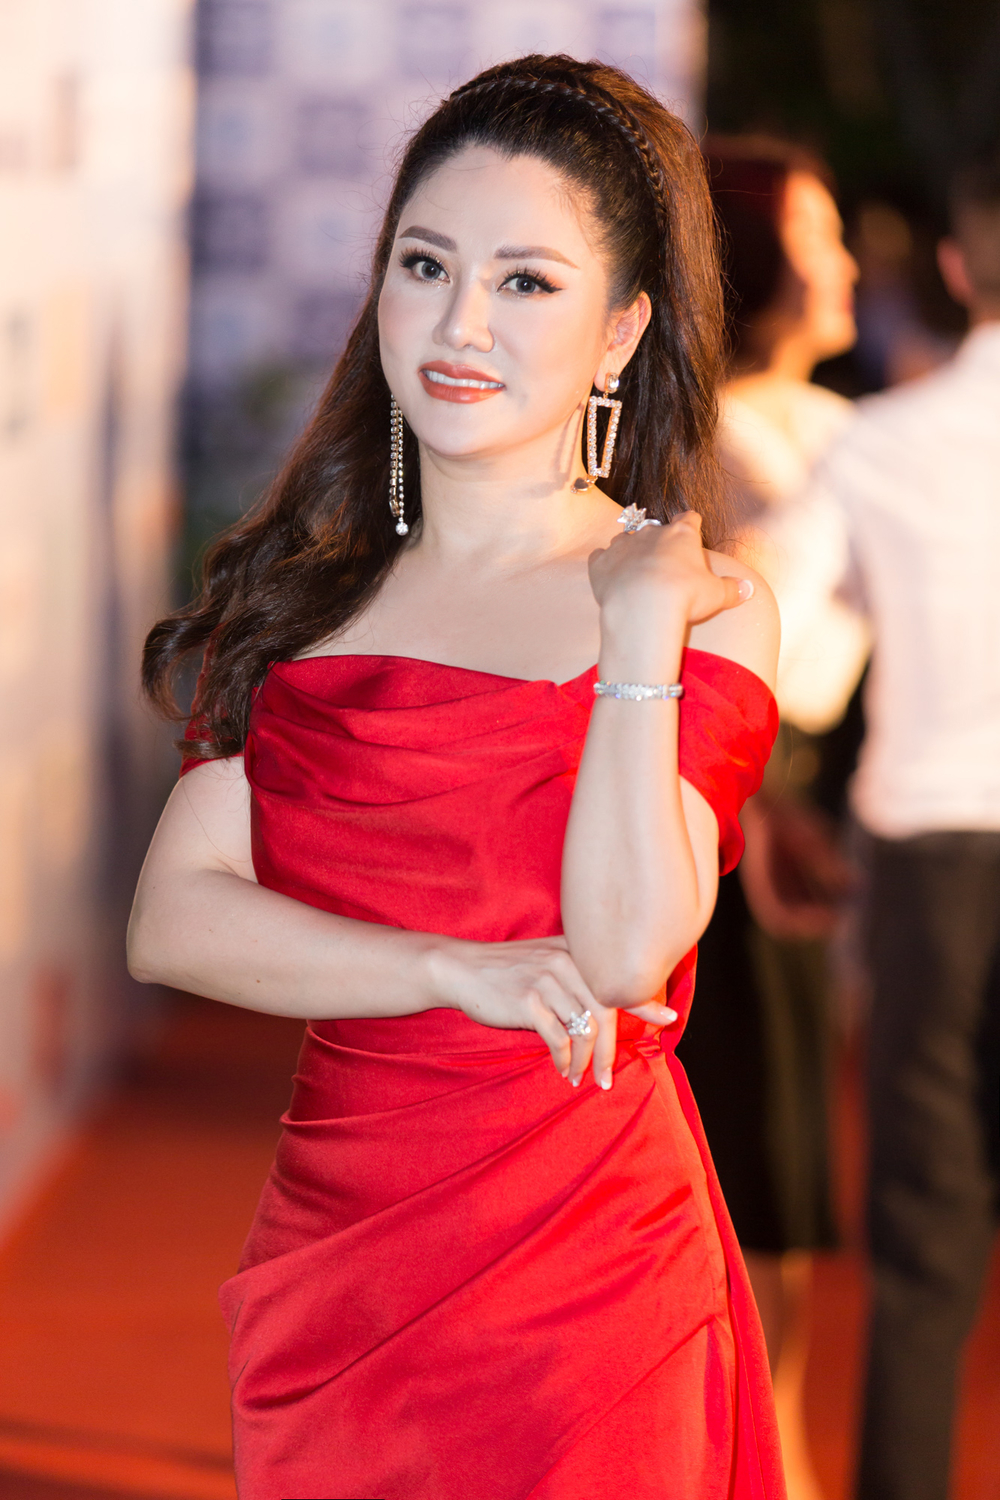  
Hoa hậu doanh nhân Đặng Thị Xuân Hương cũng góp mặt trong thảm đỏ đầy hương sắc. - Tin sao Viet - Tin tuc sao Viet - Scandal sao Viet - Tin tuc cua Sao - Tin cua Sao